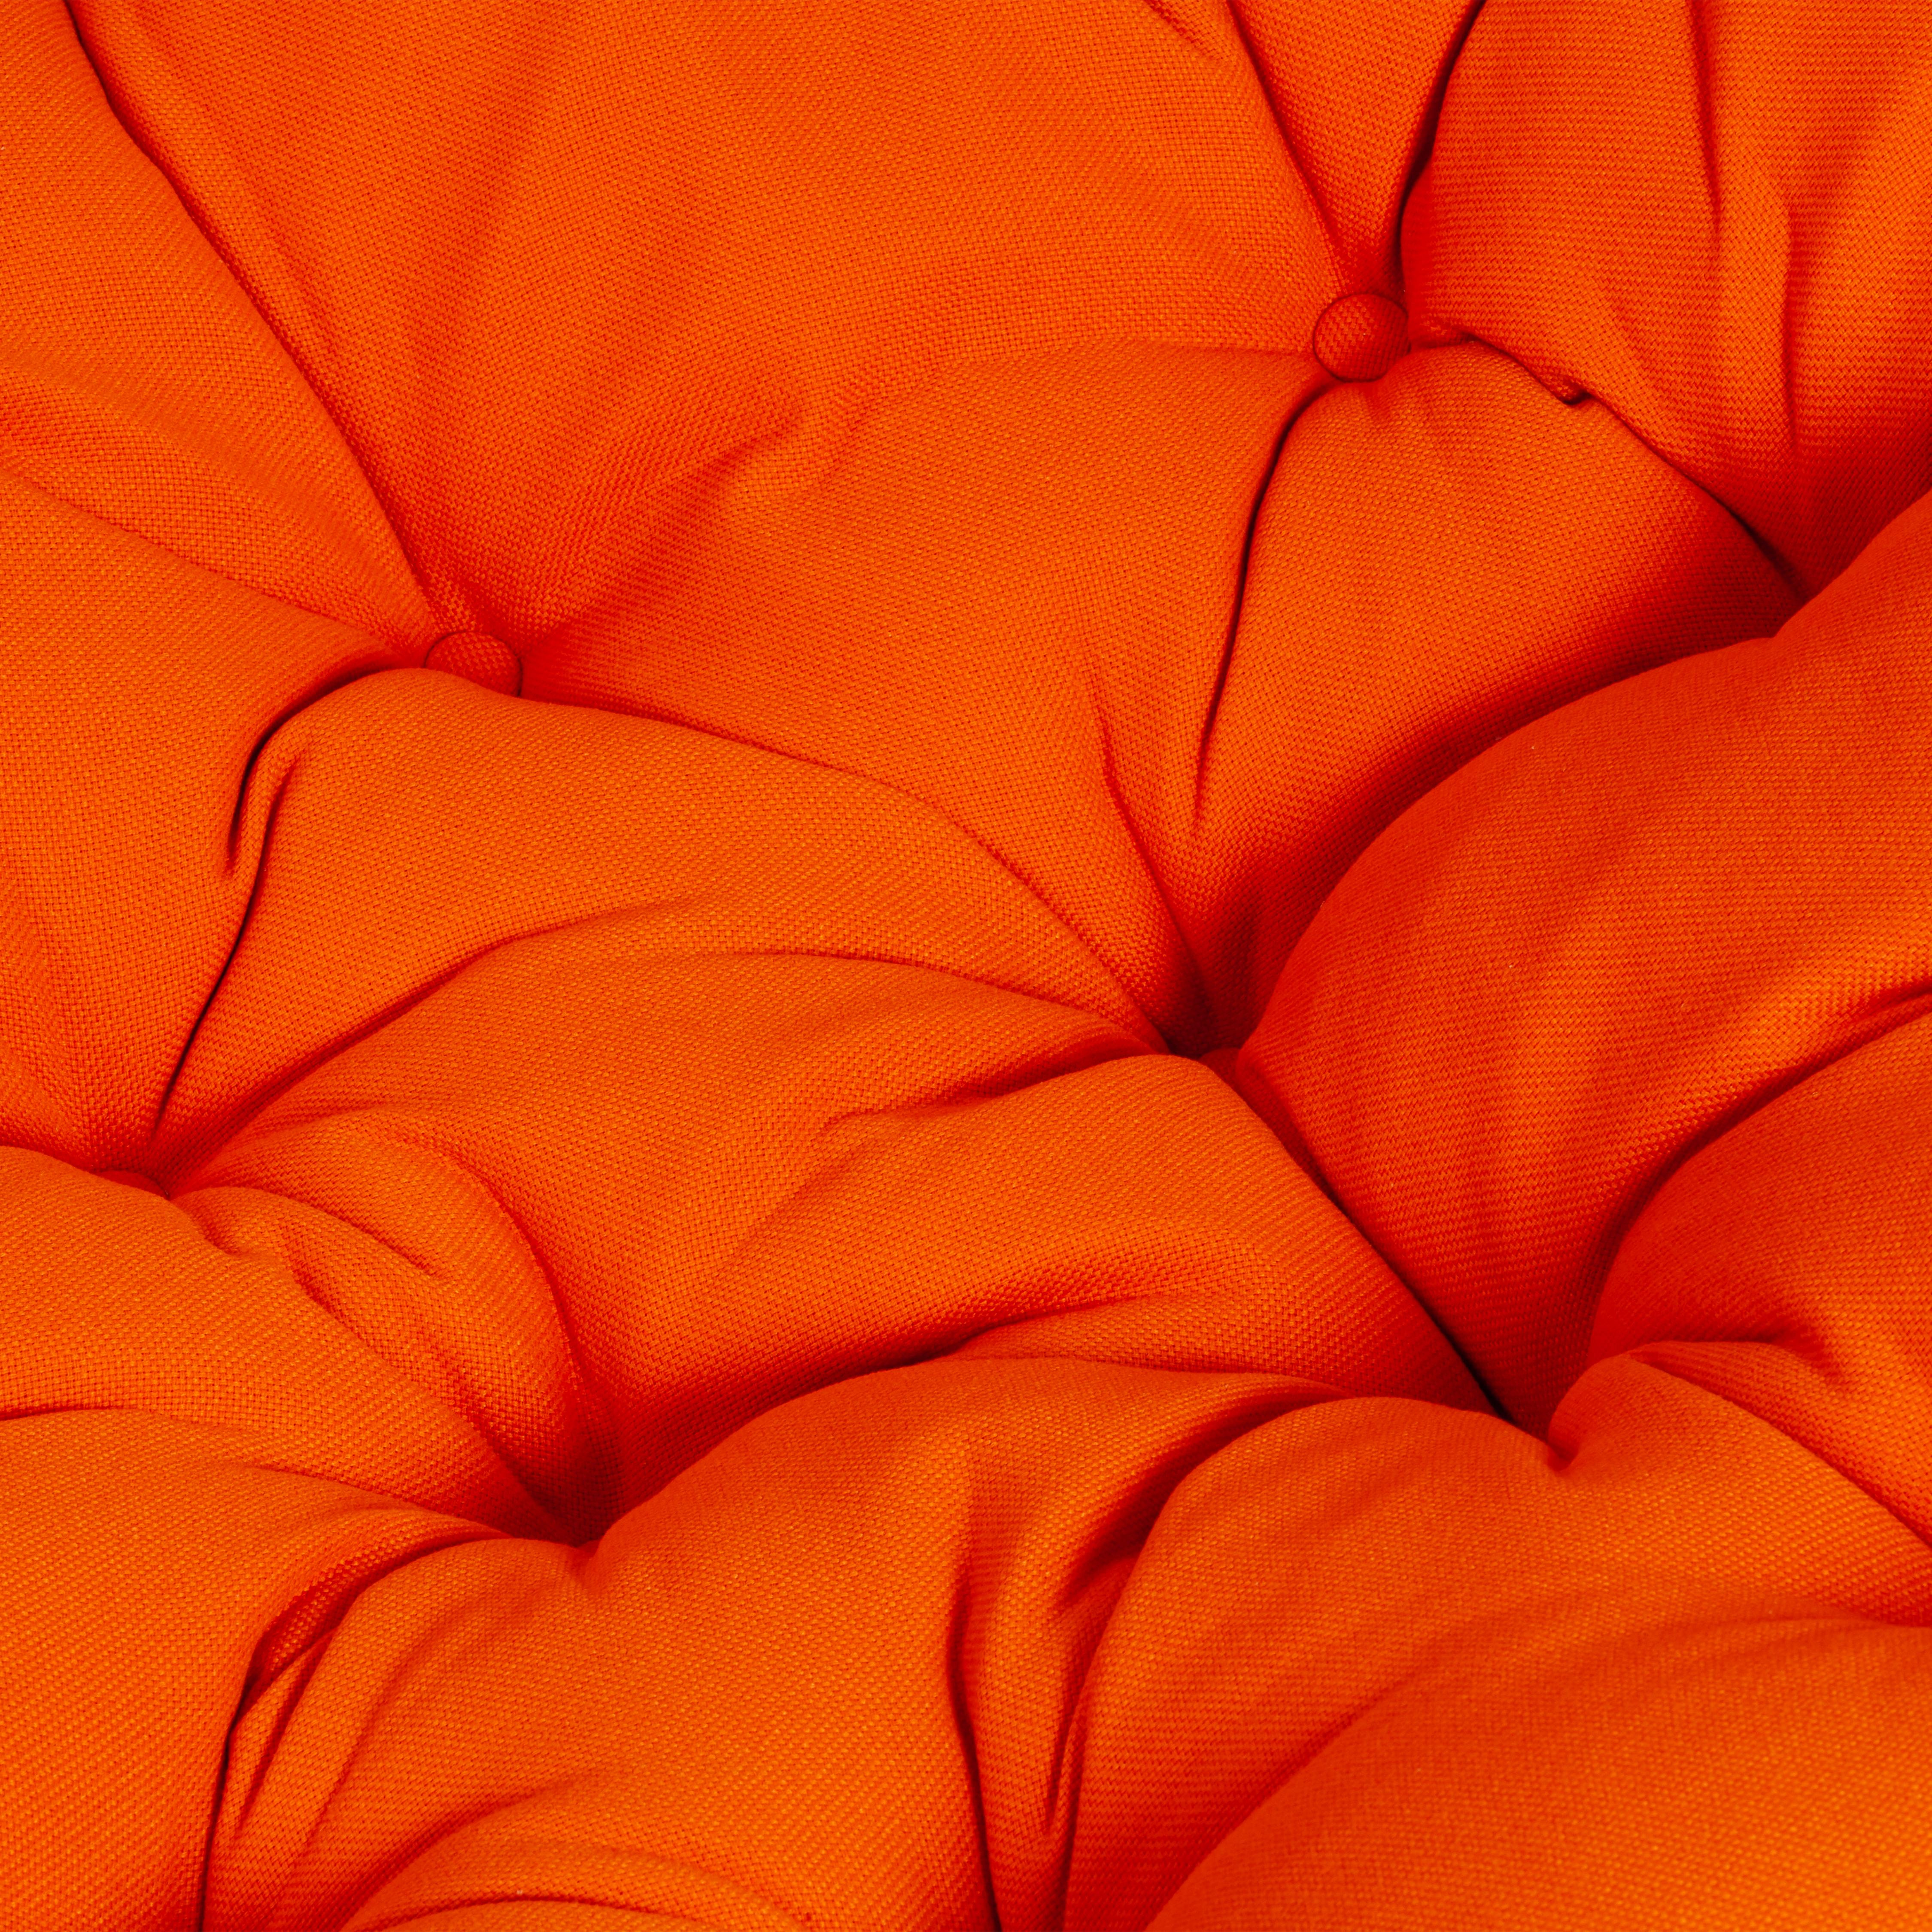 Кресло PAPASAN ECO/ПАПАСАН ЭКО P115-1/SP STD /c подушкой, ремешками/ диаметр подушки 122 см, 115x101x92 см, Natural (натуральный), ткань Оранжевый, С 23